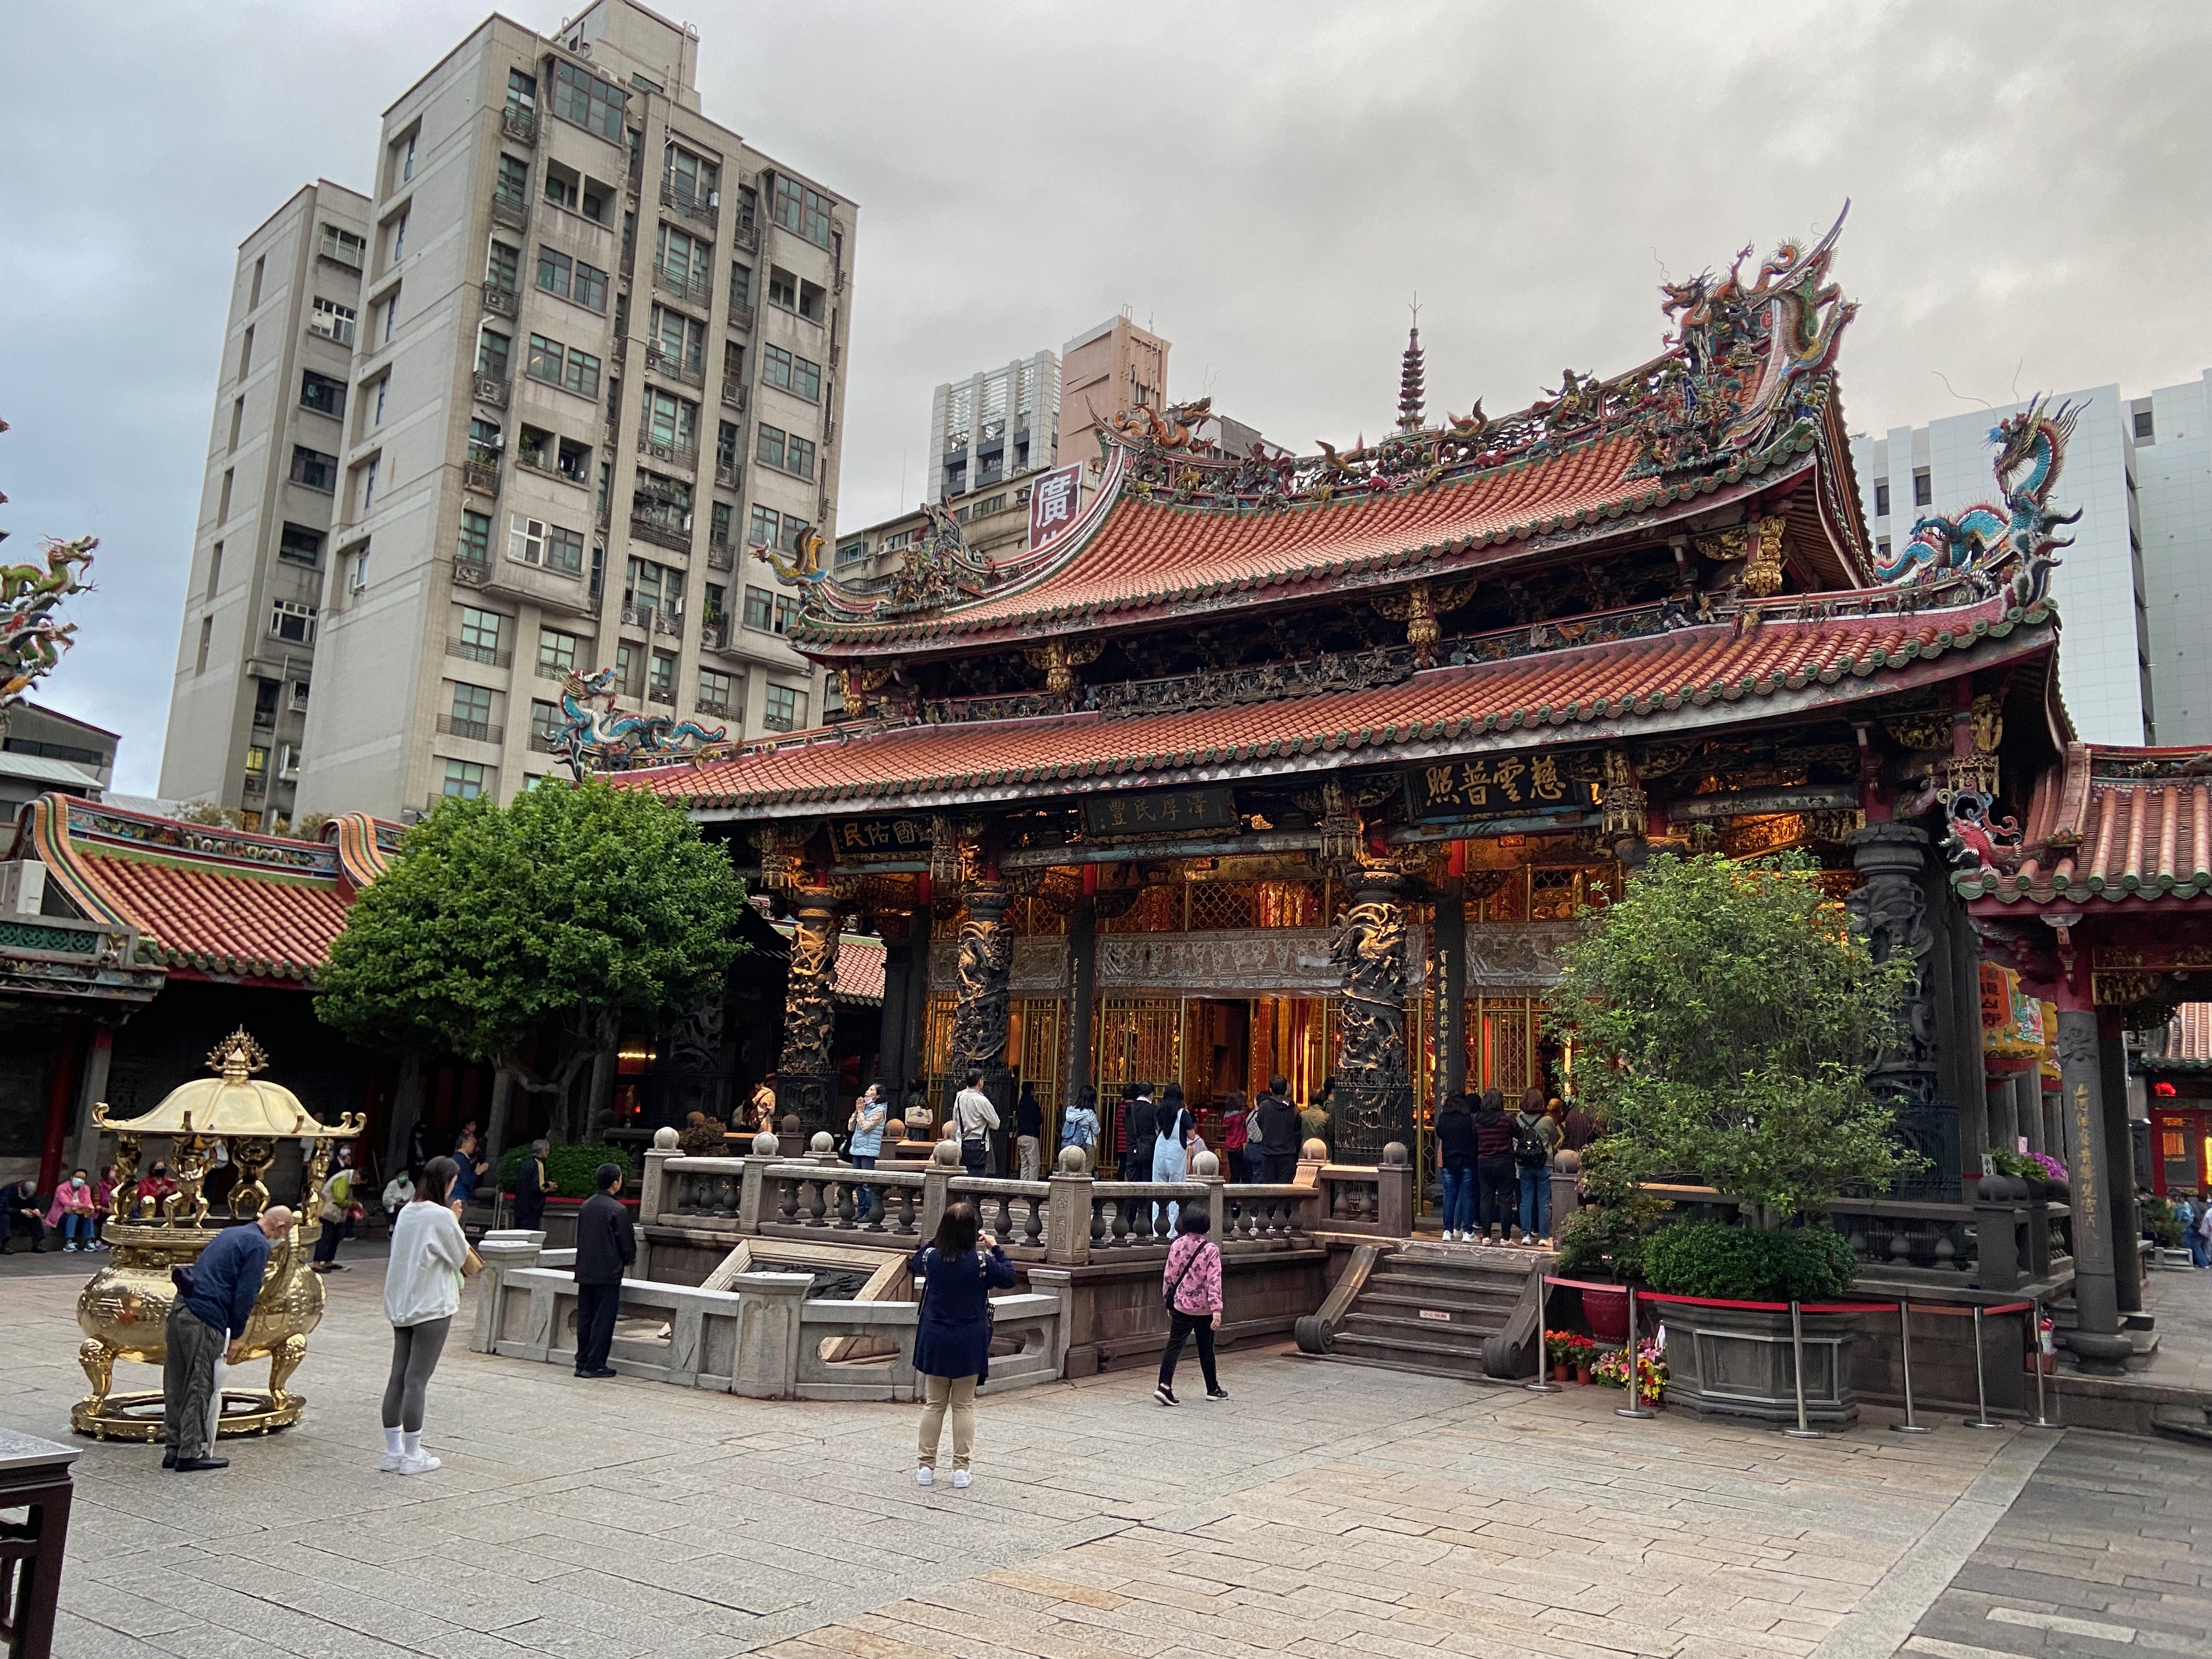 Inside Longshan Temple.